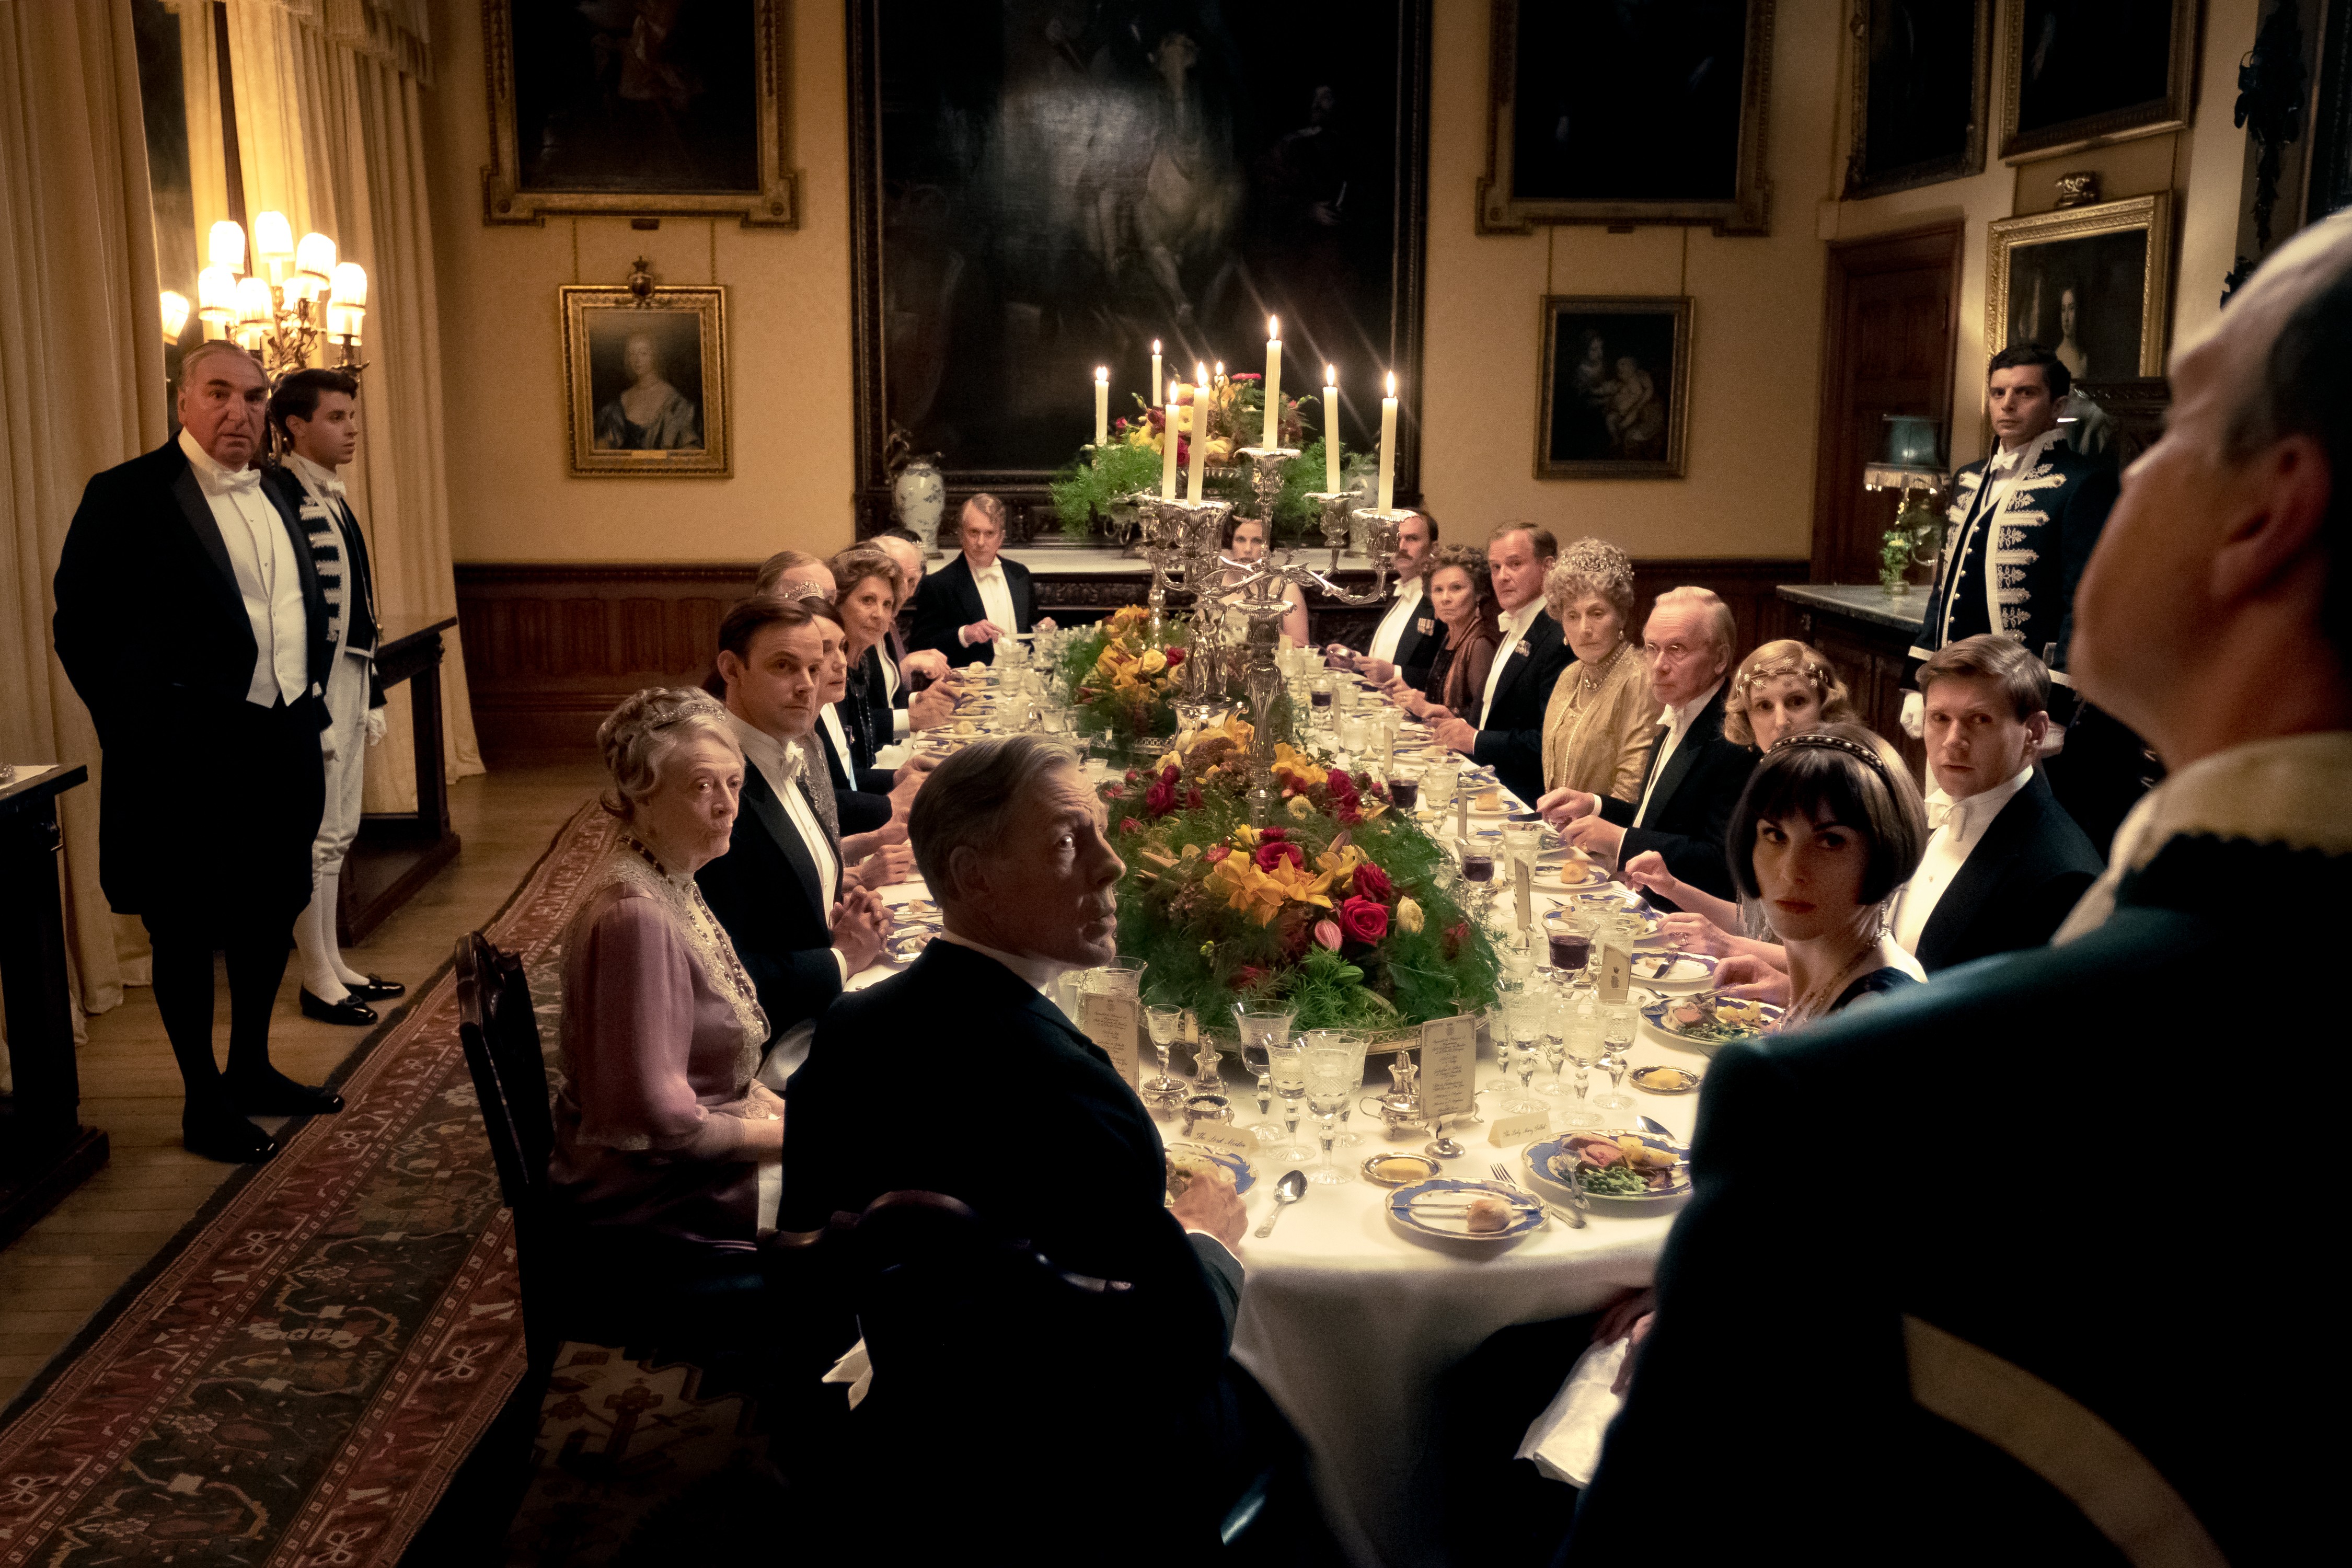 Jantar da família Crawley com a realeza britânica em "Downton Abbey - o filme" (Foto: Divulgação)